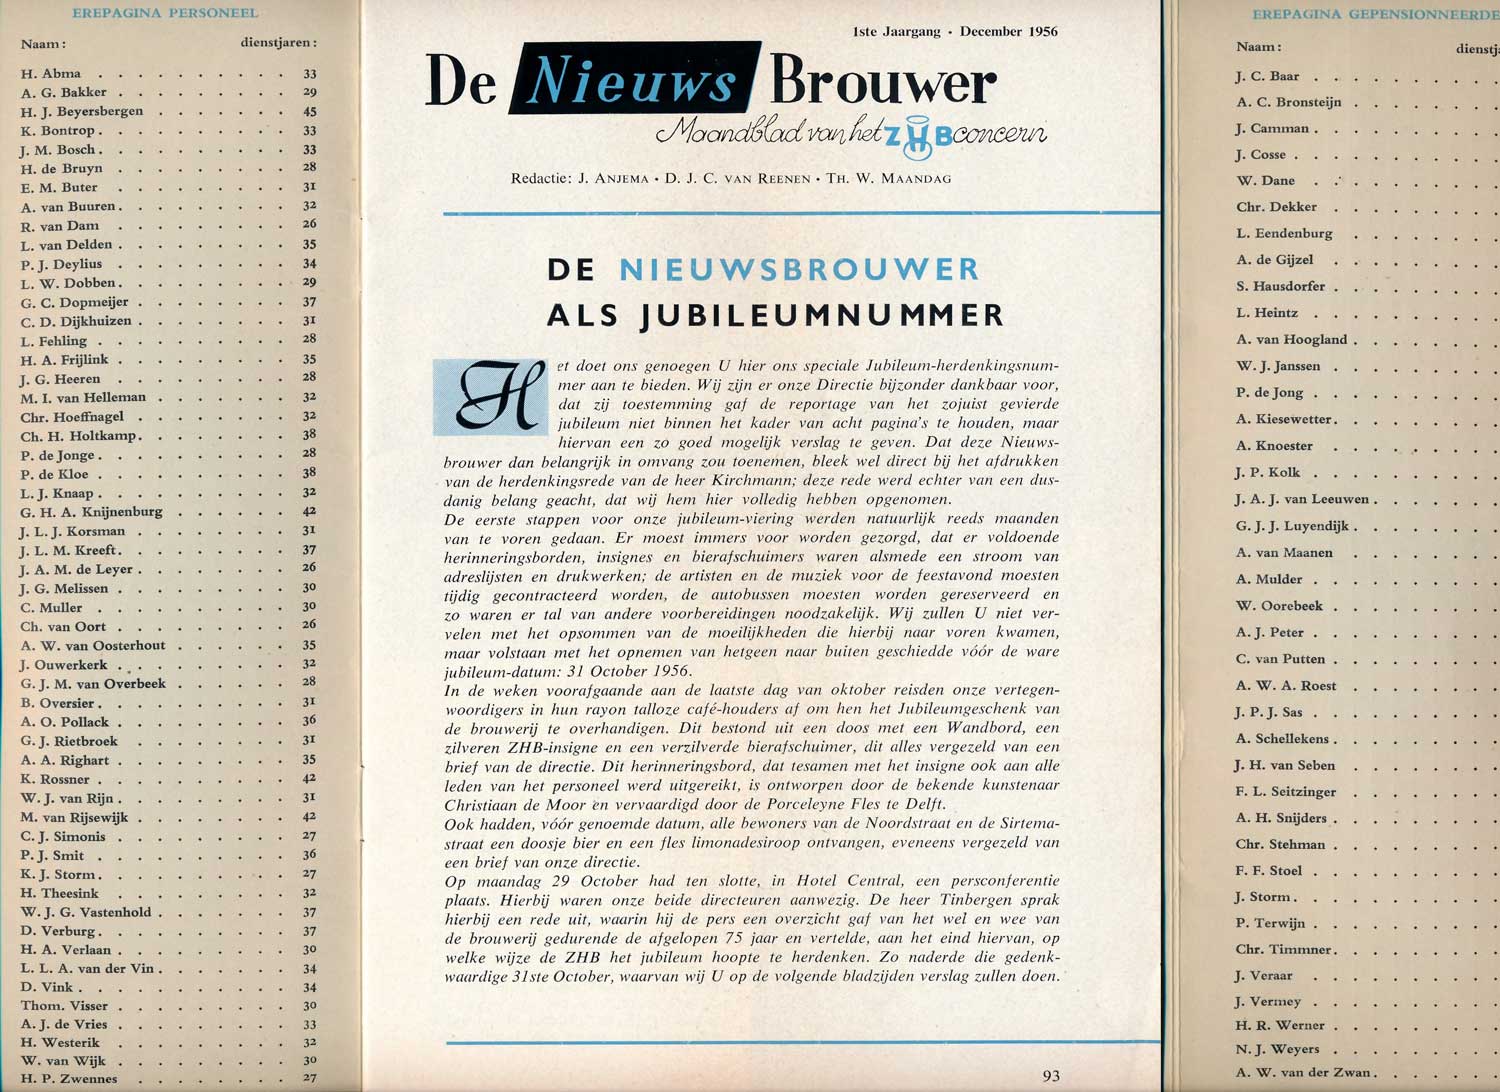 ZHB, bierbrouwerij, Noordstraat 36, 1956